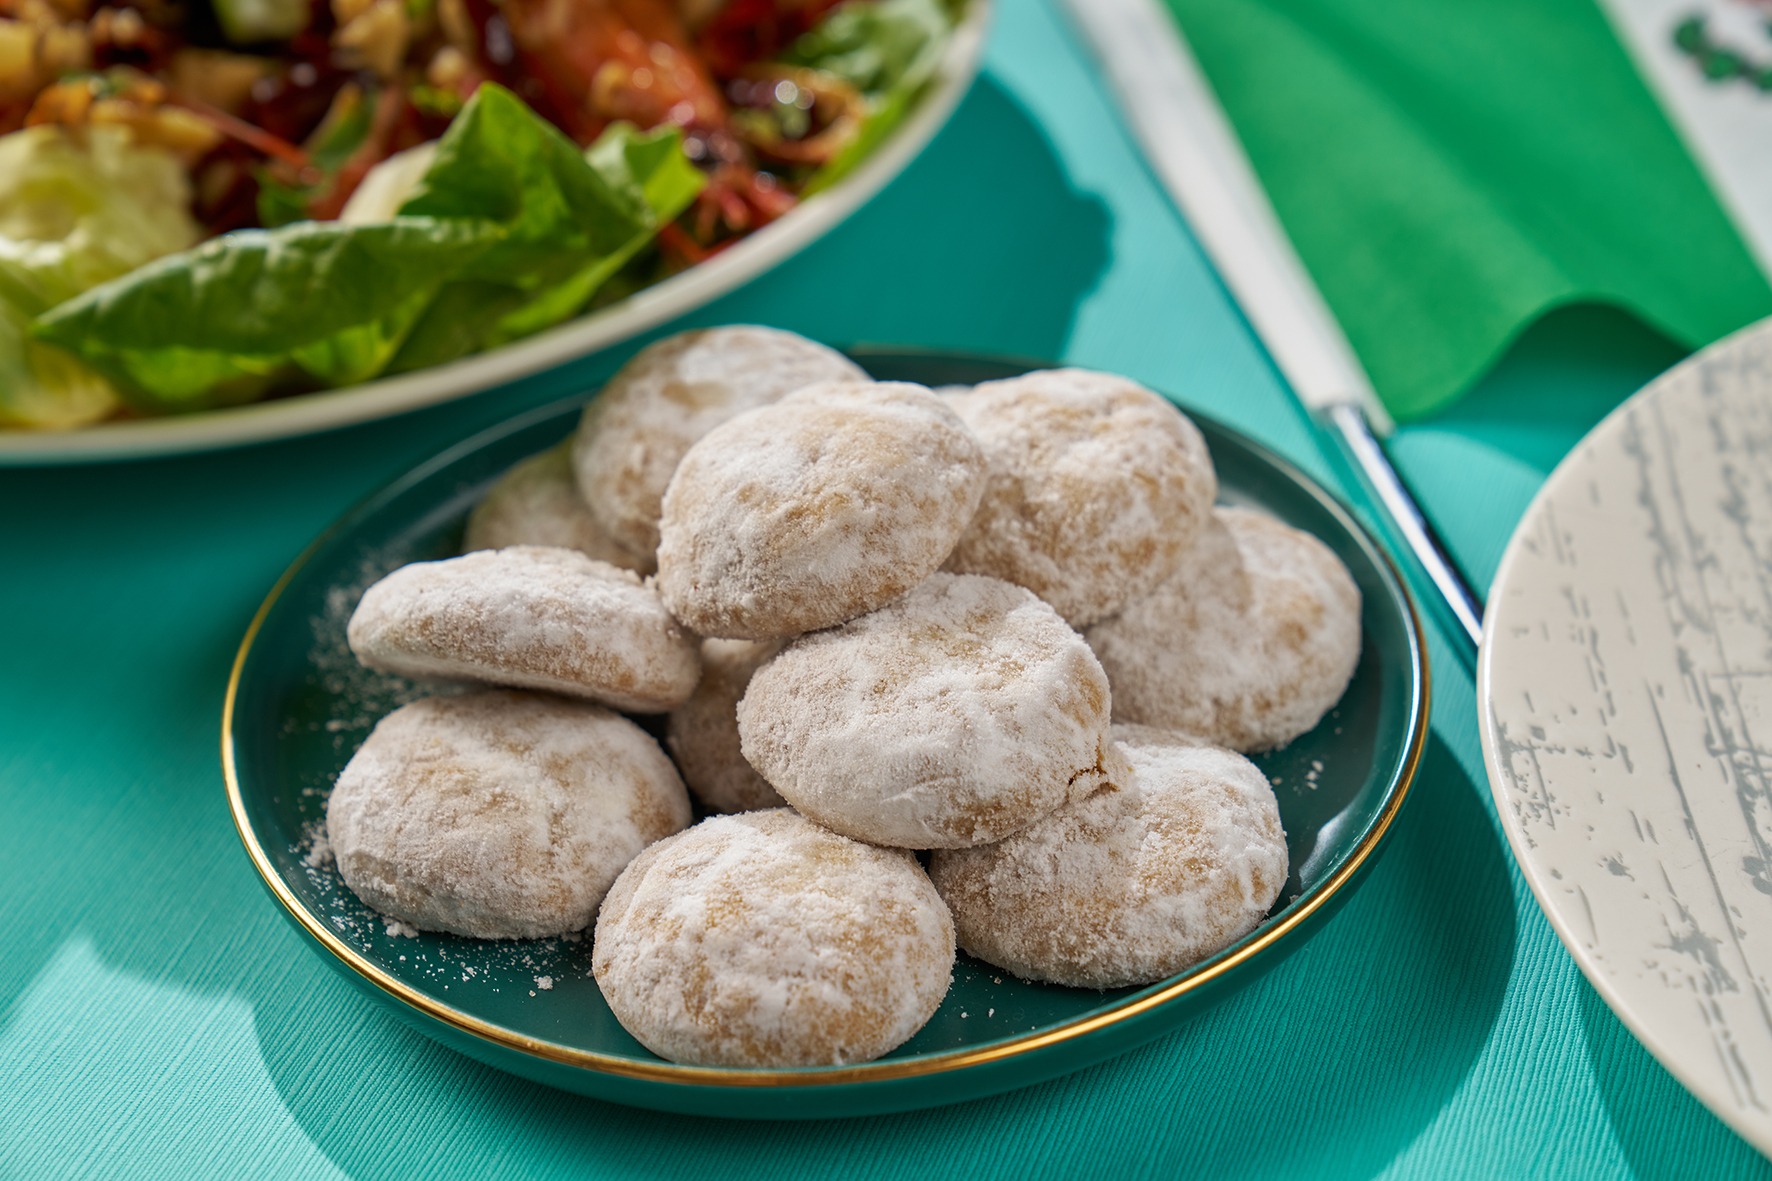 婚庆典礼中时常出现的「墨西哥婚礼饼干」，白色糖衣包裹著坚果饼干，口感酥松香甜。图/台北福华大饭店提供